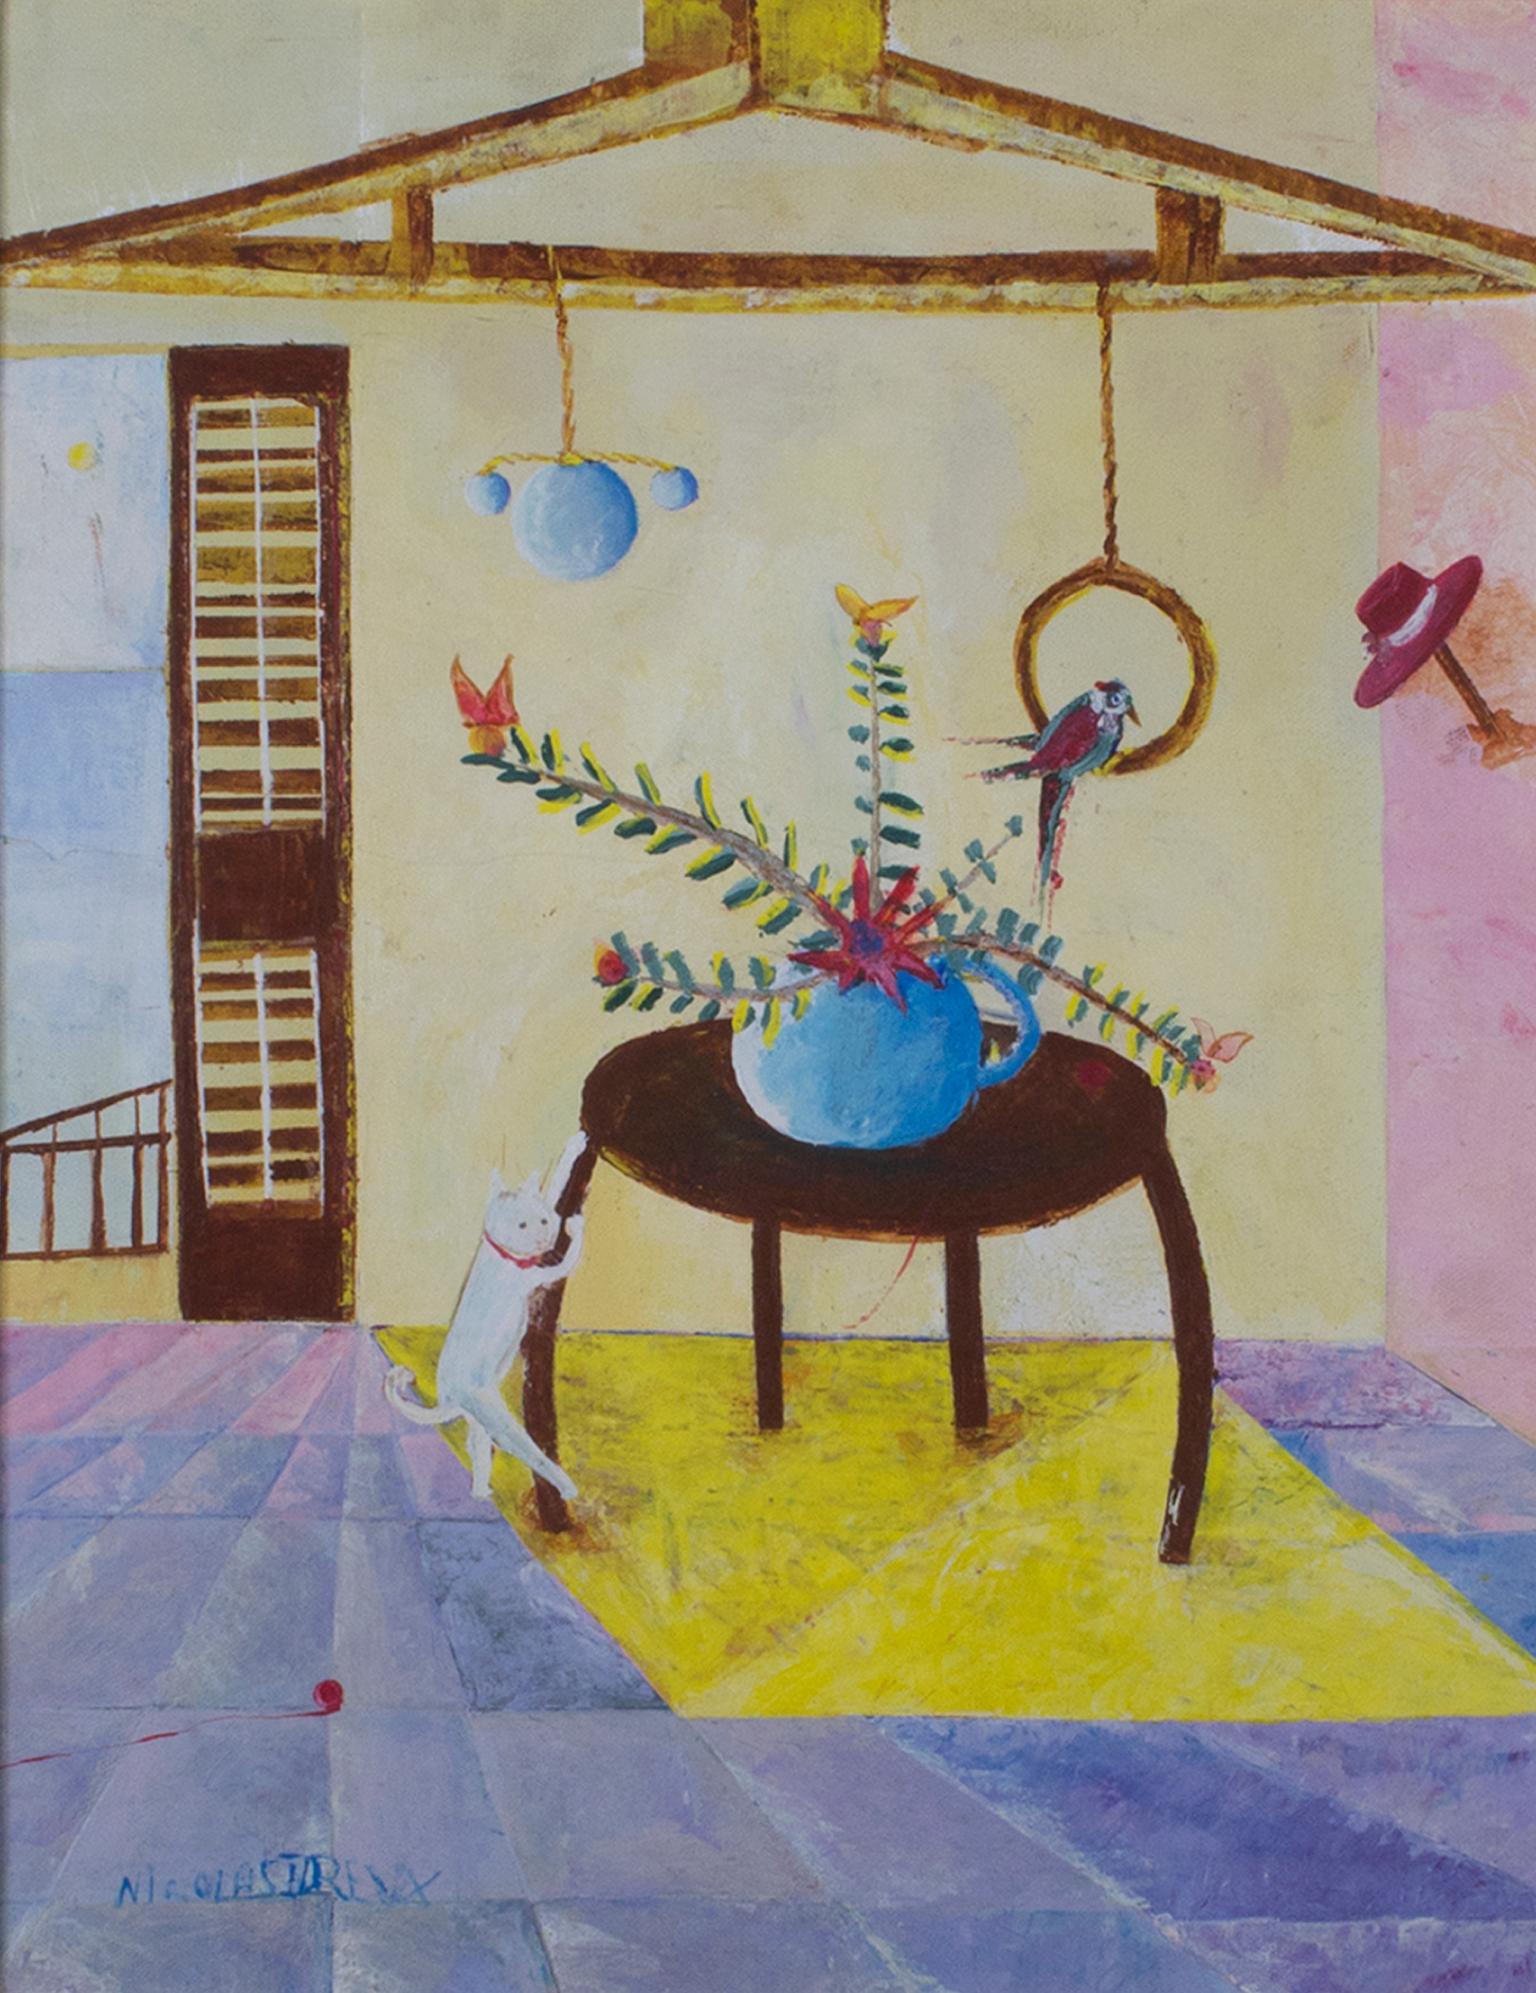 ""Table à gratter avec chat", peinture à l'huile sur toile intérieure signée par Nicolas Dreux